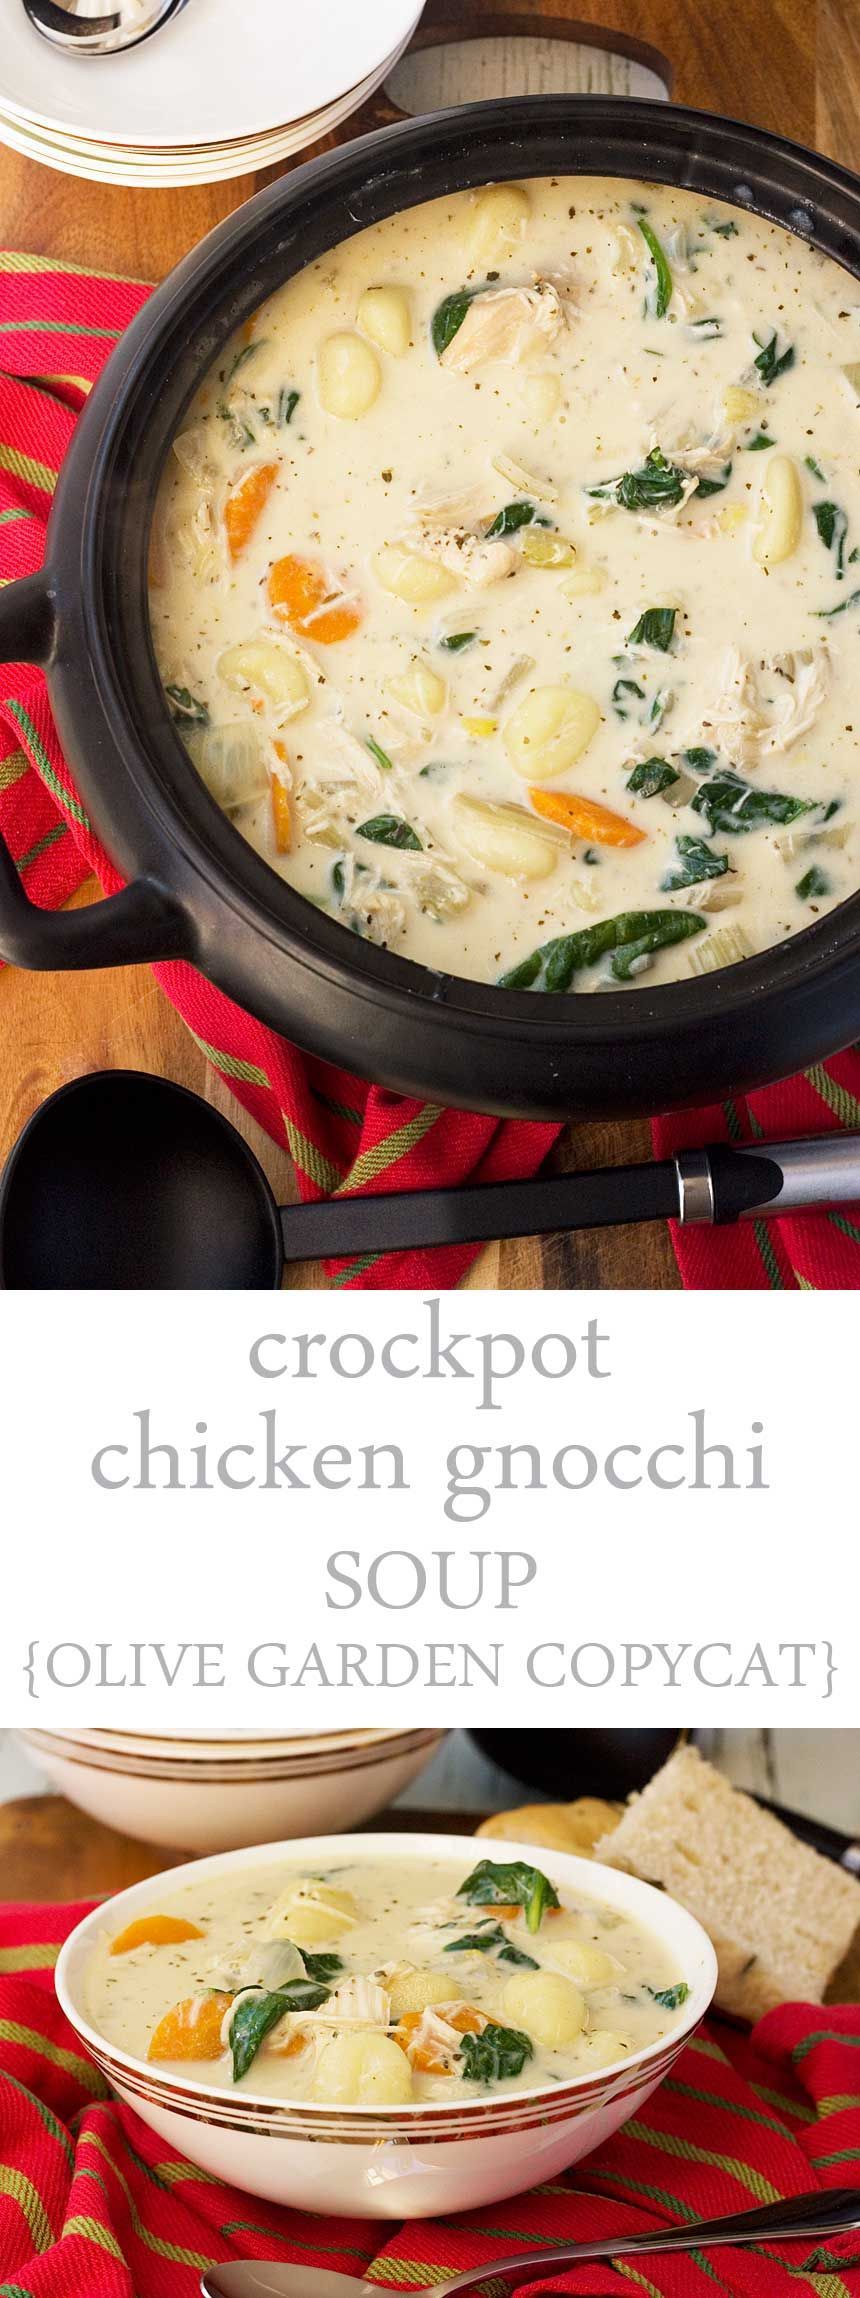 Crockpot chicken gnocchi soup – Olive Garden copycat!